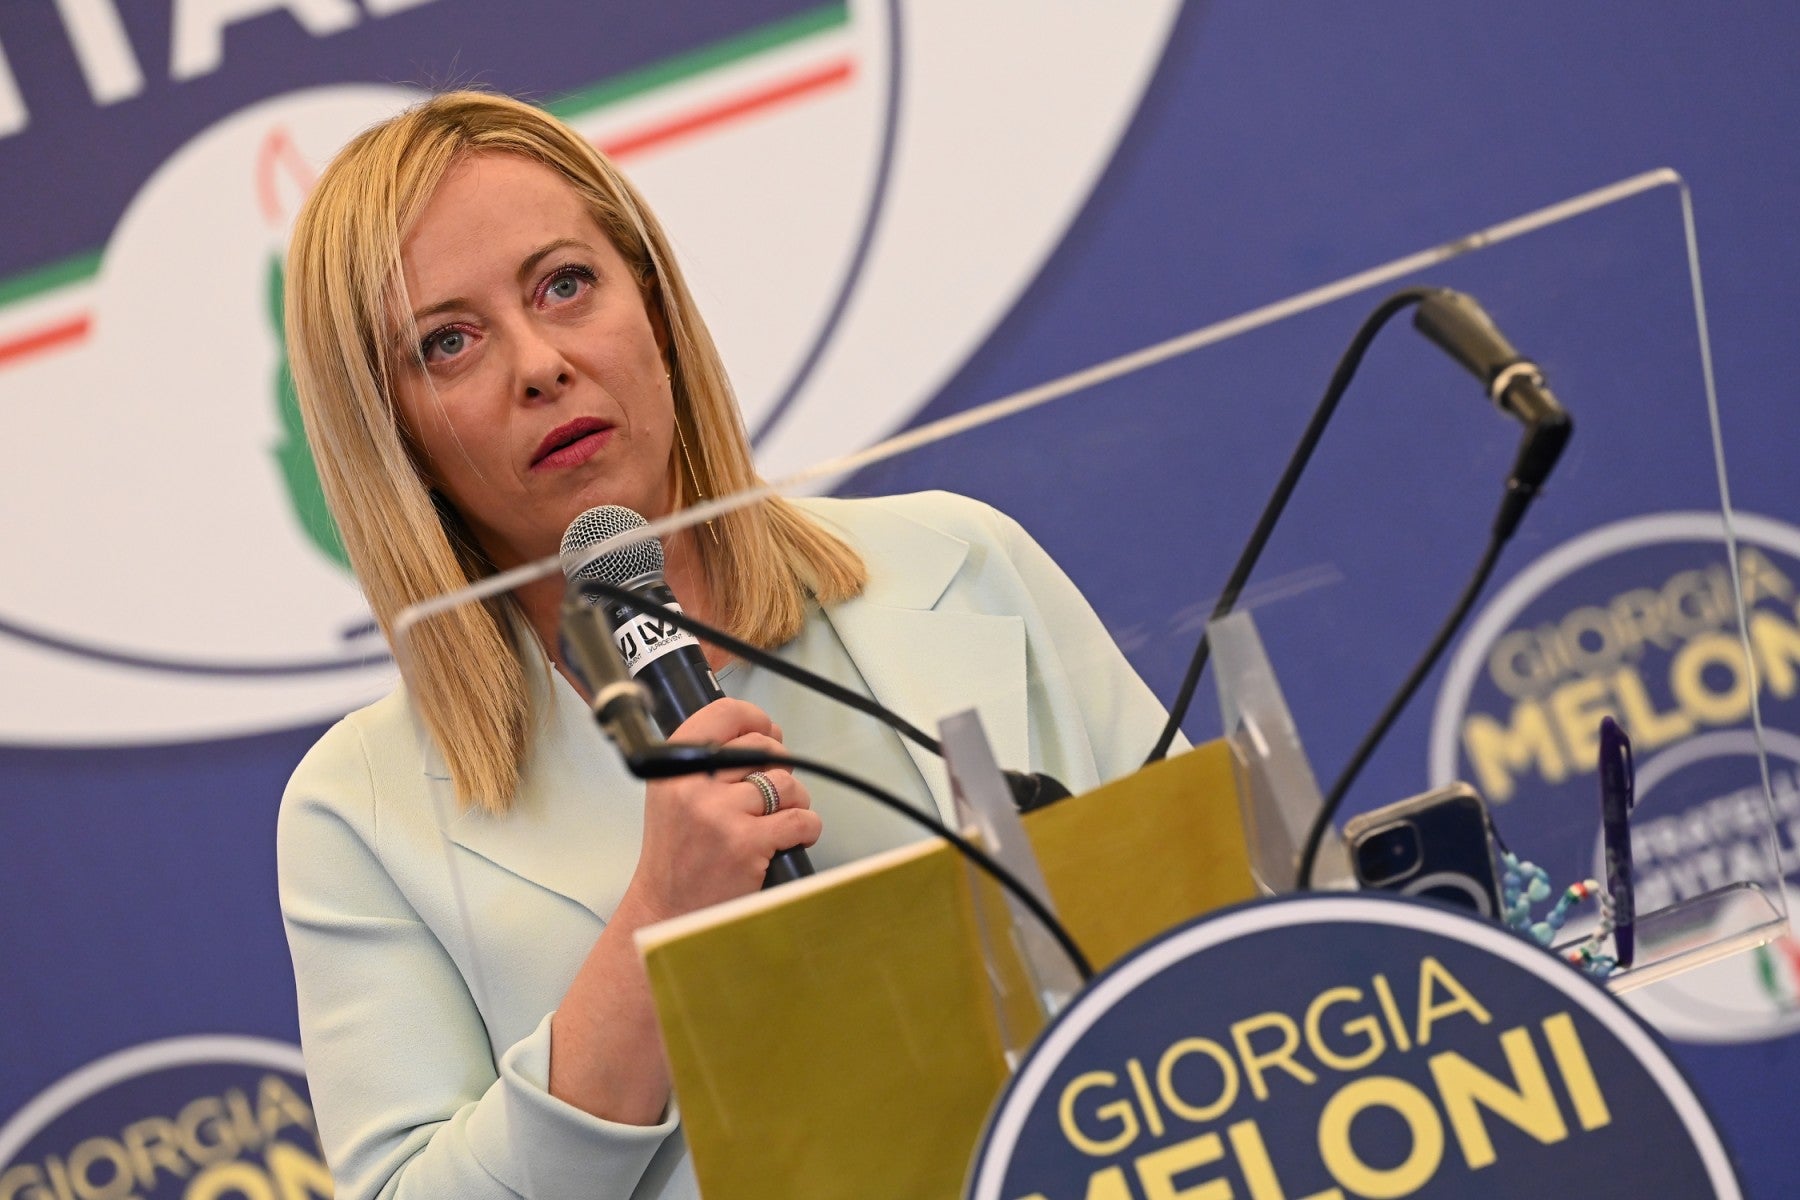 Qui est Giorgia Meloni, la présidente du parti post-fasciste en passe de devenir cheffe du gouvernement italien ?